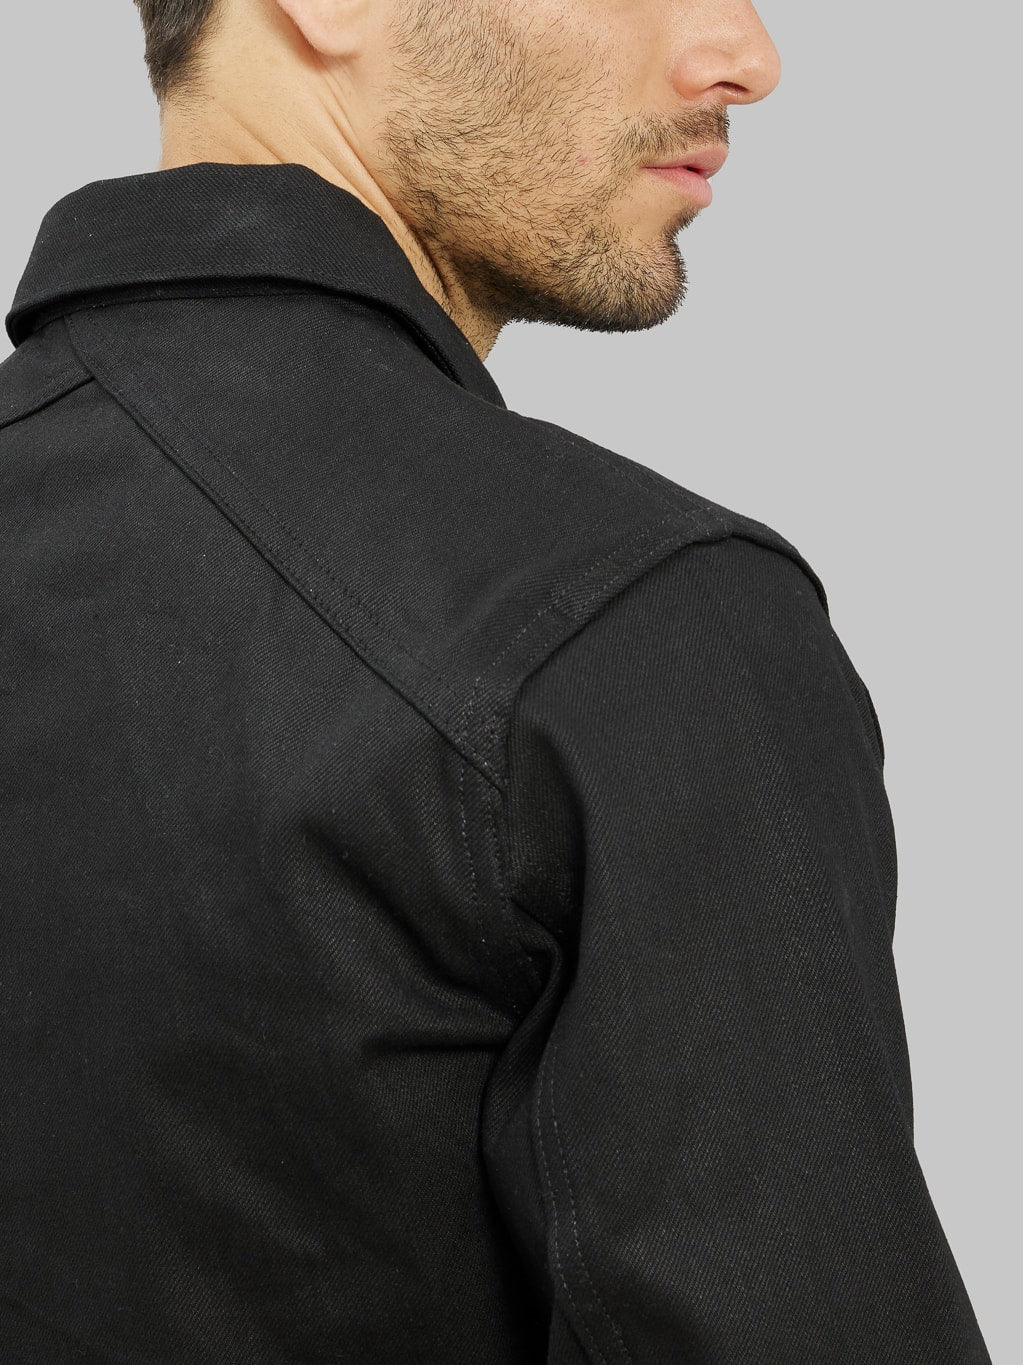 3sixteen type III denim jacket double black crossback yoke